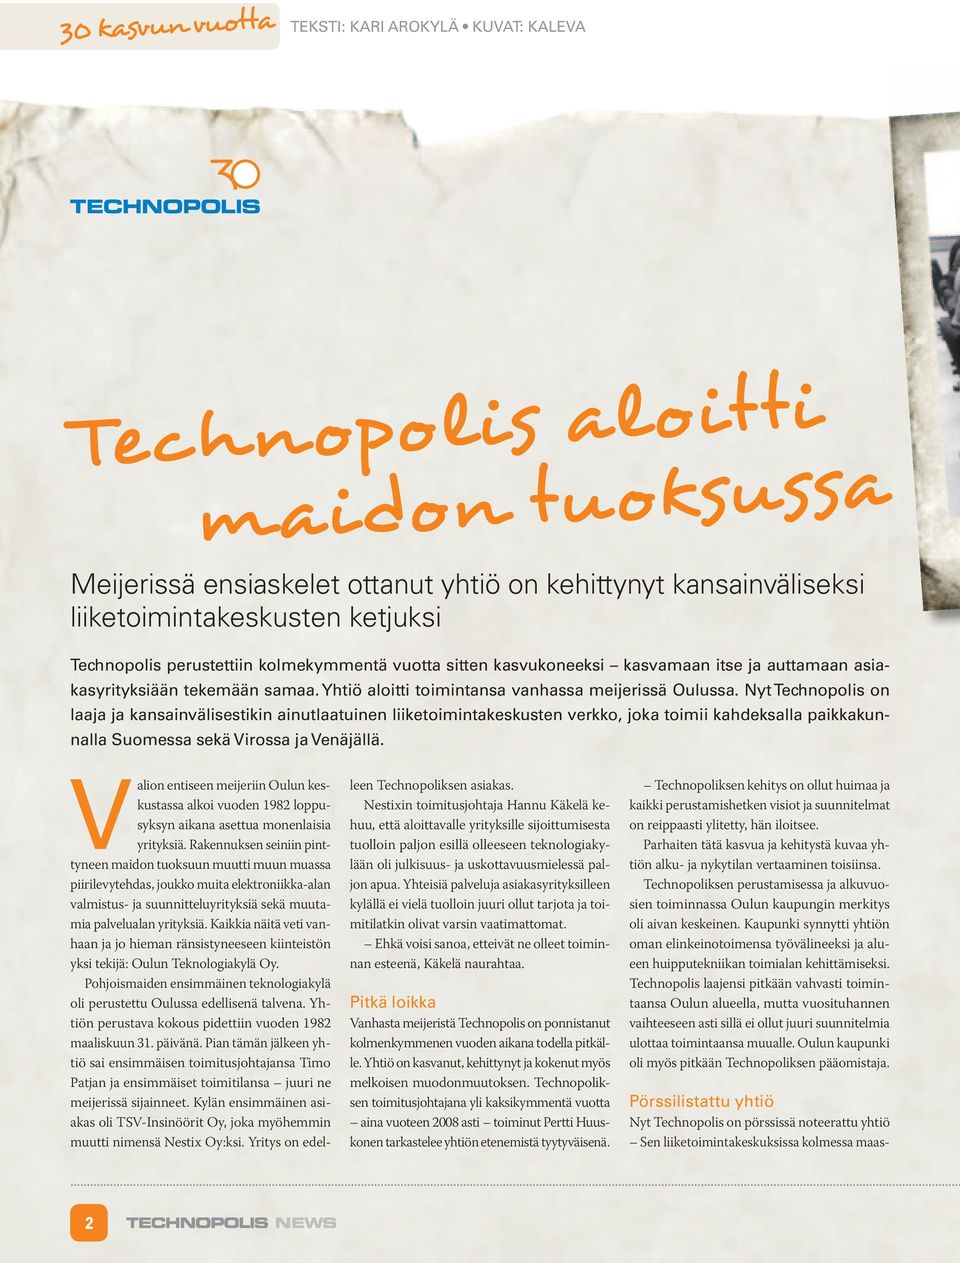 Nyt Technopolis on laaja ja kansainvälisestikin ainutlaatuinen liiketoimintakeskusten verkko, joka toimii kahdeksalla paikkakunnalla Suomessa sekä Virossa ja Venäjällä.